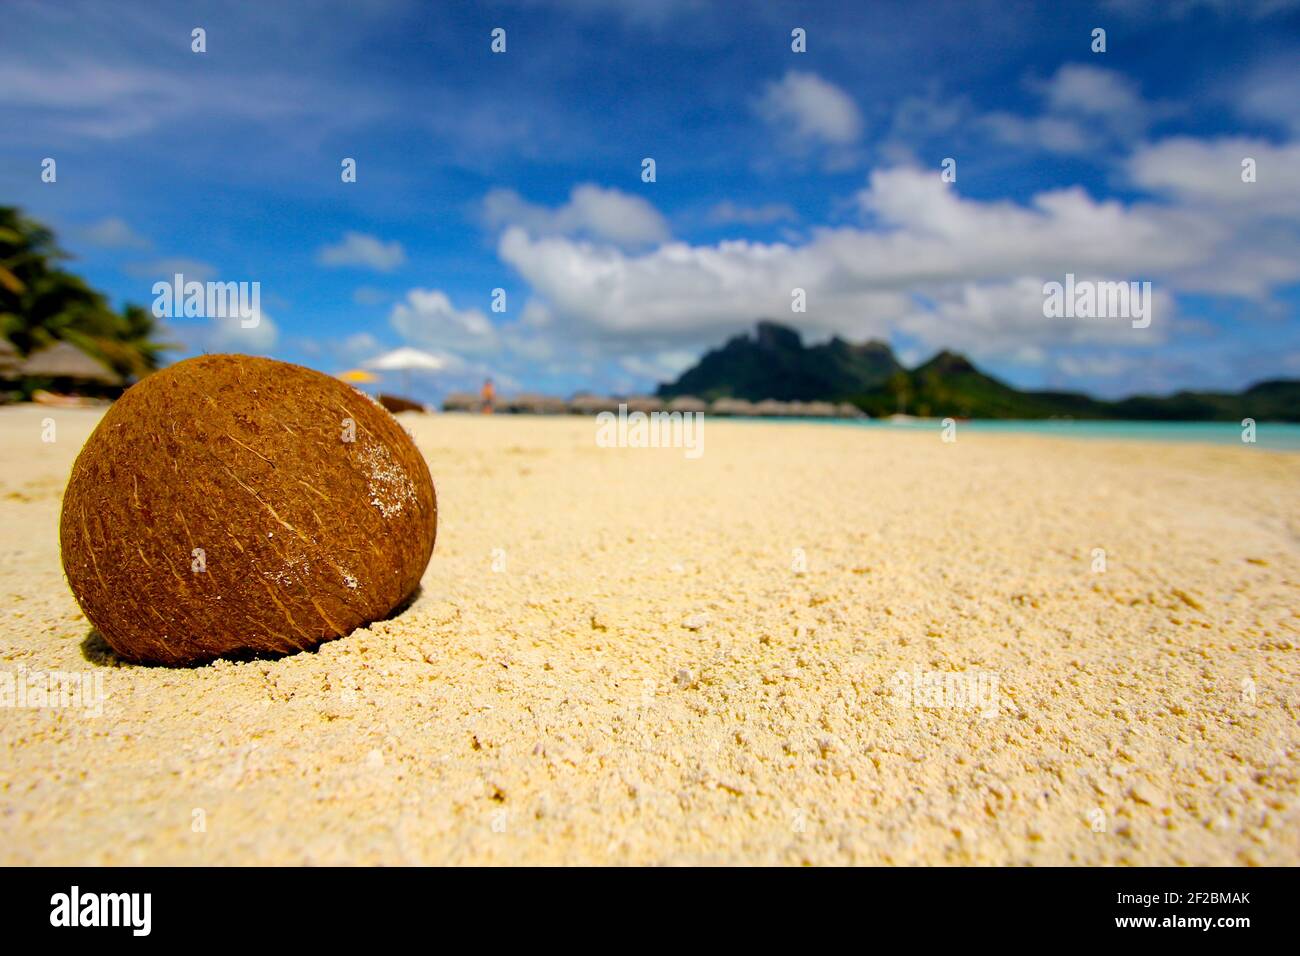 Coconut lies on the beach in Bora Bora, French Polynesia Stock Photo